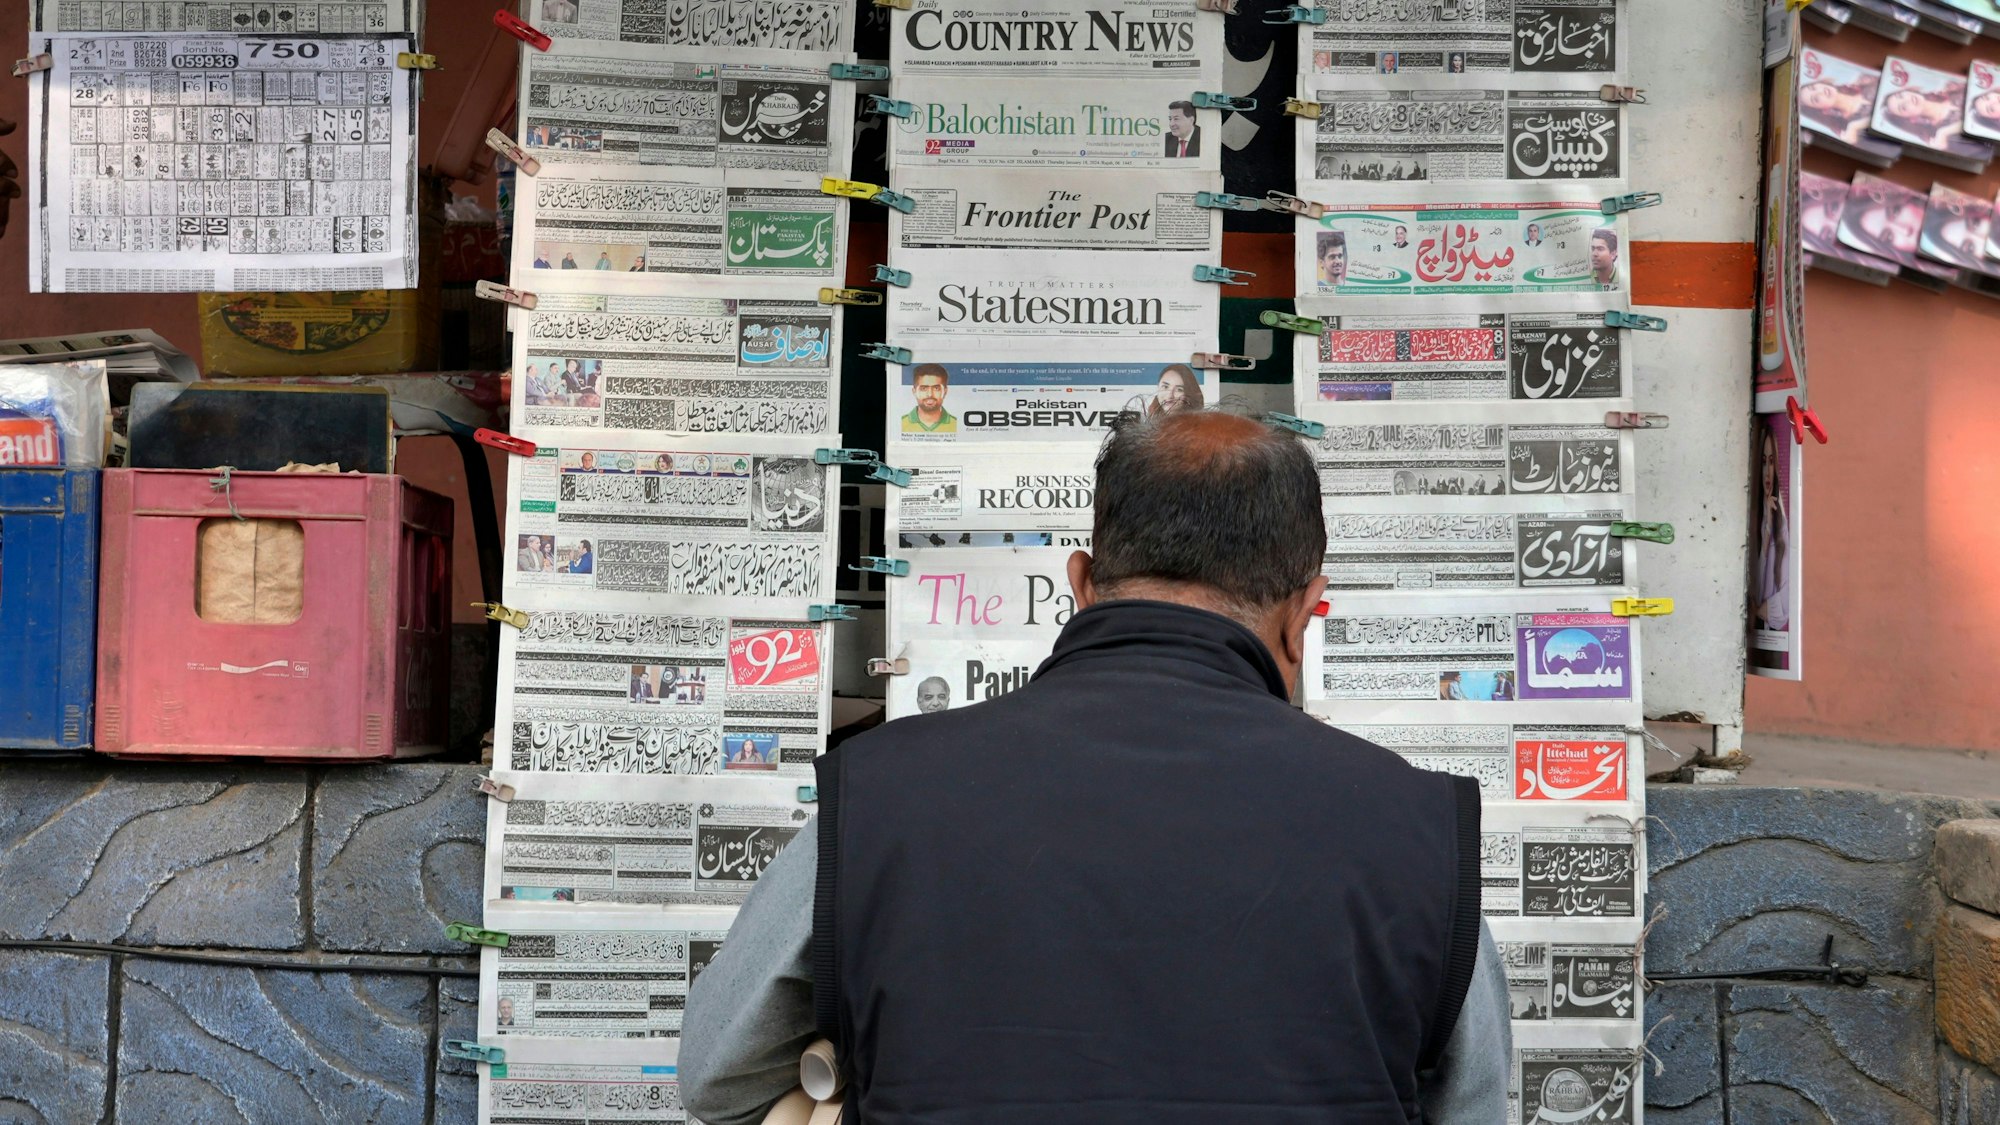 Ein Pakistaner liest an einem Verkaufsstand Tageszeitungen, die auf der Titelseite über den iranischen Angriff berichten.